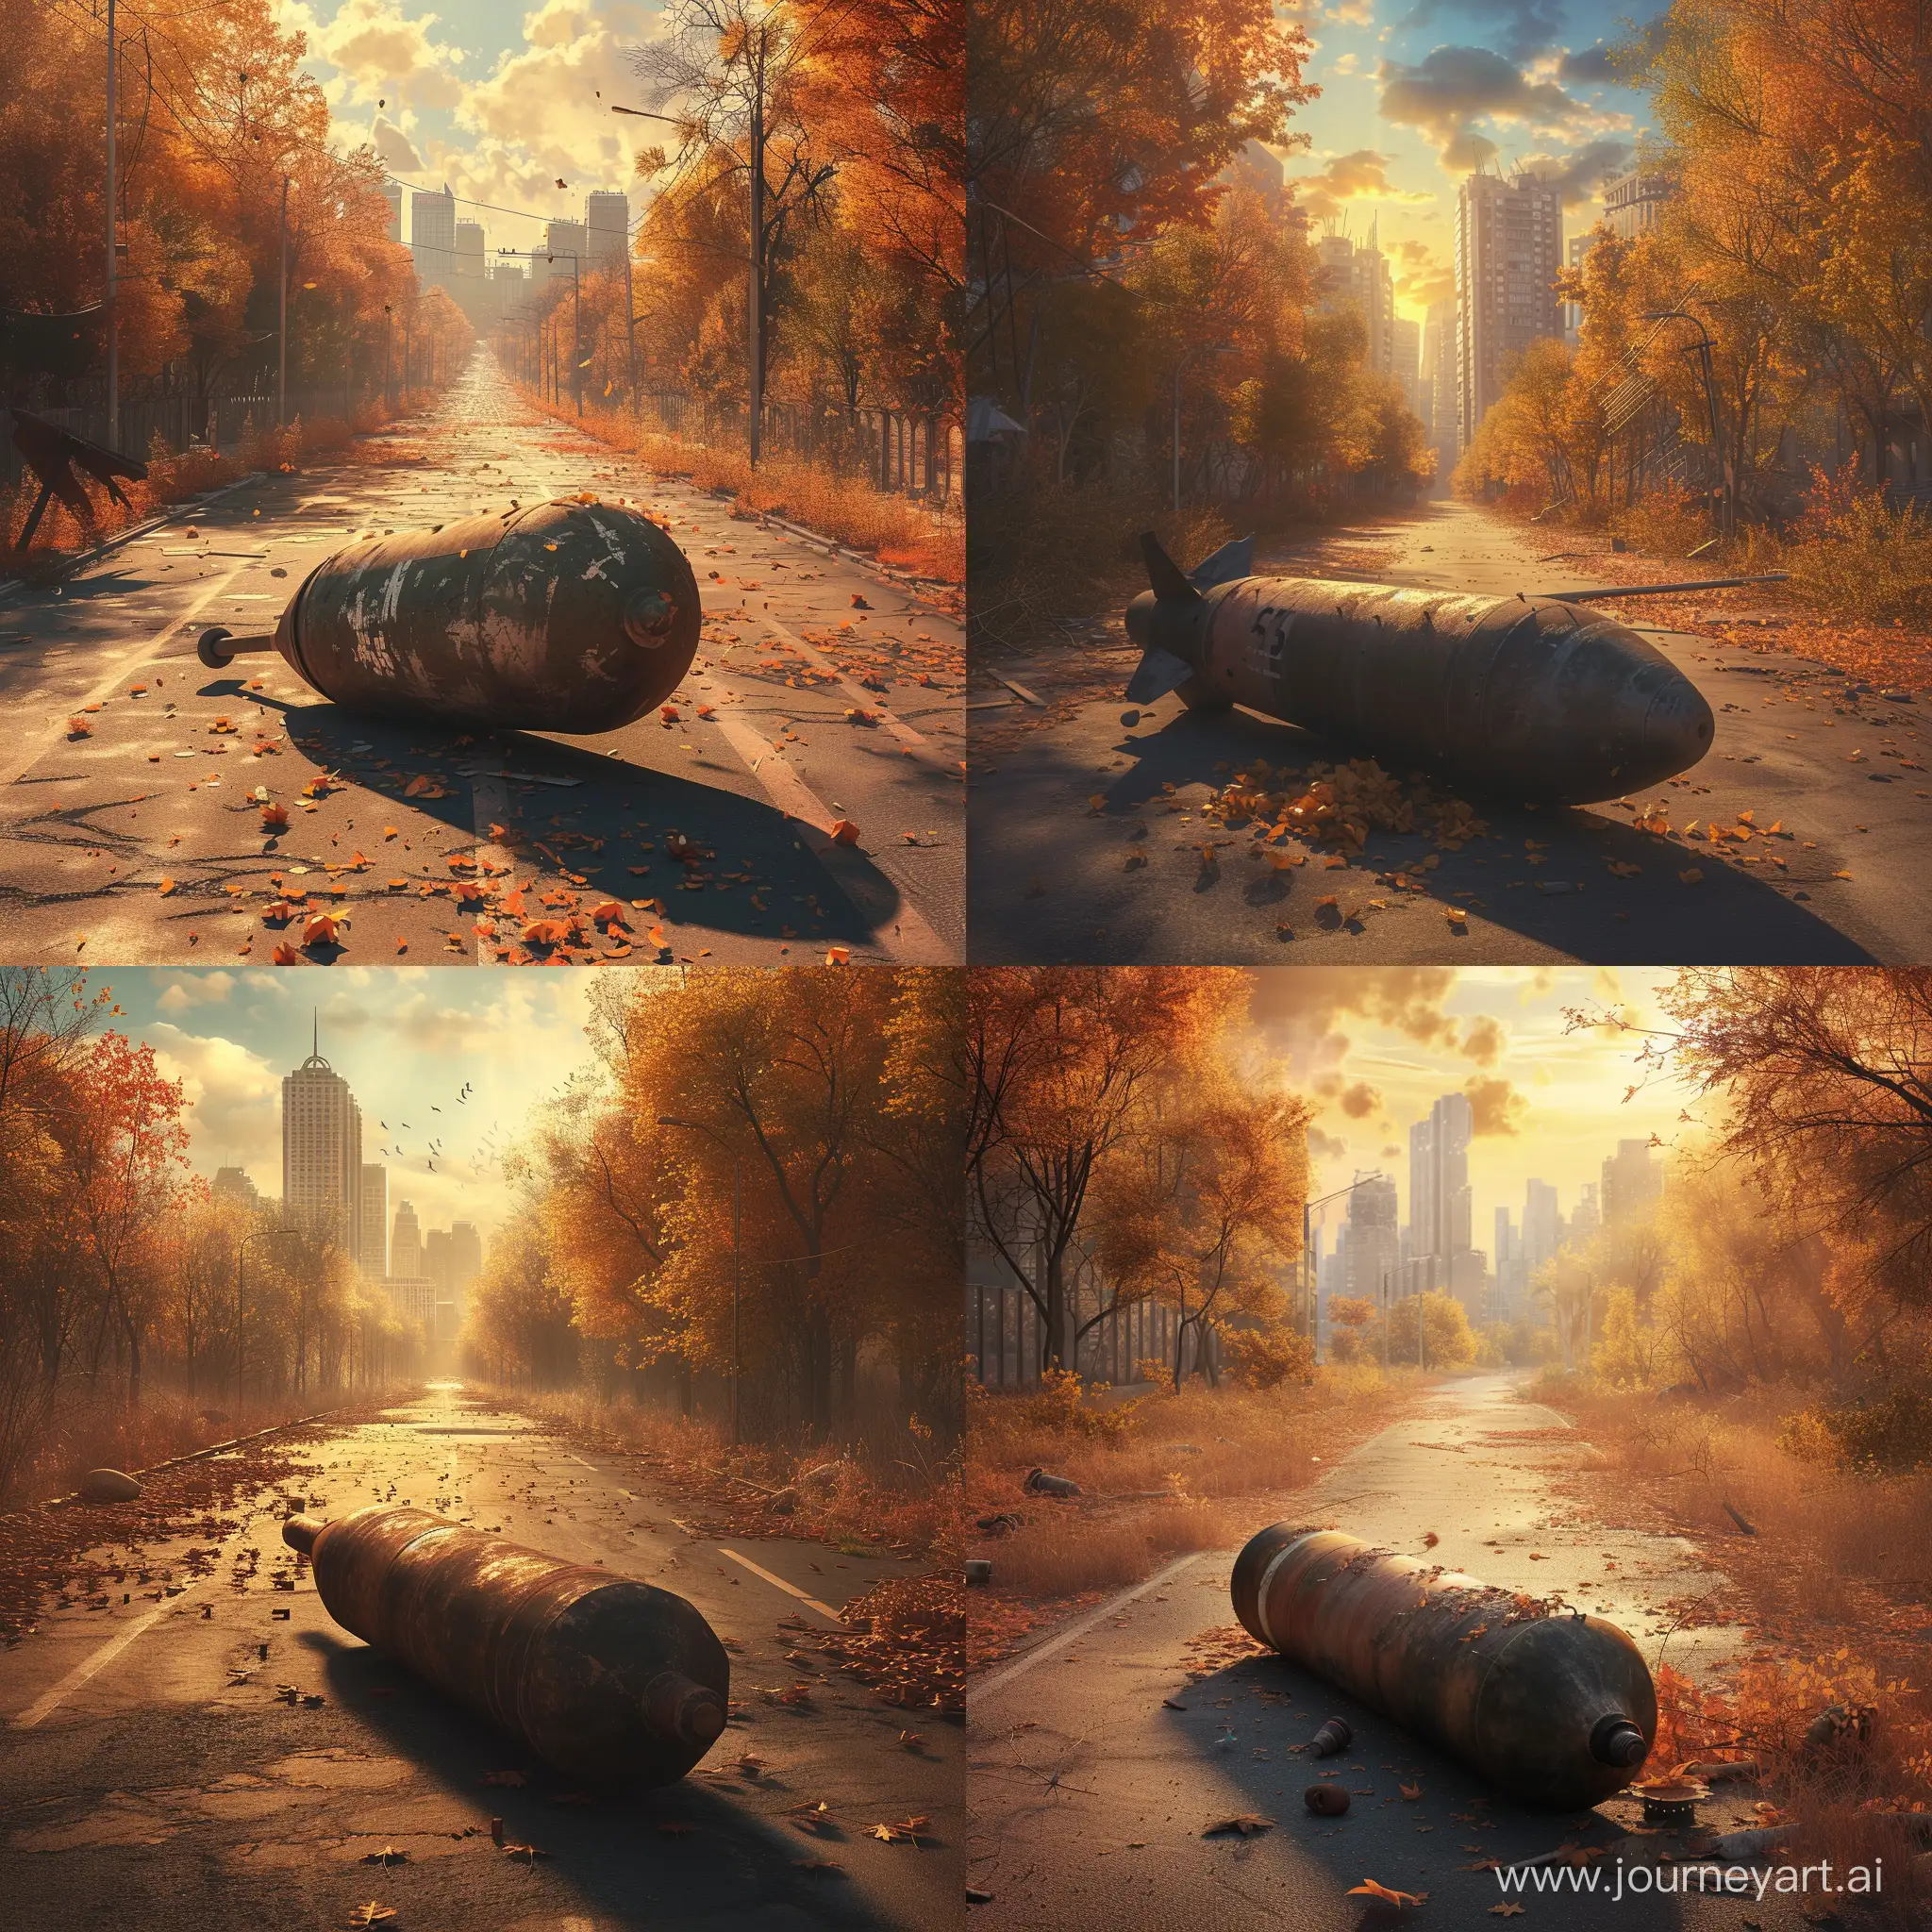 Una bomba de la segunda guerra mundial tipo AN-M56 de 4.000 libras ha caído al suelo sin explotar, bajo el sol de otoño en una carretera de una ciudad abandonada, ficción, wallpaper, cg artwork, art